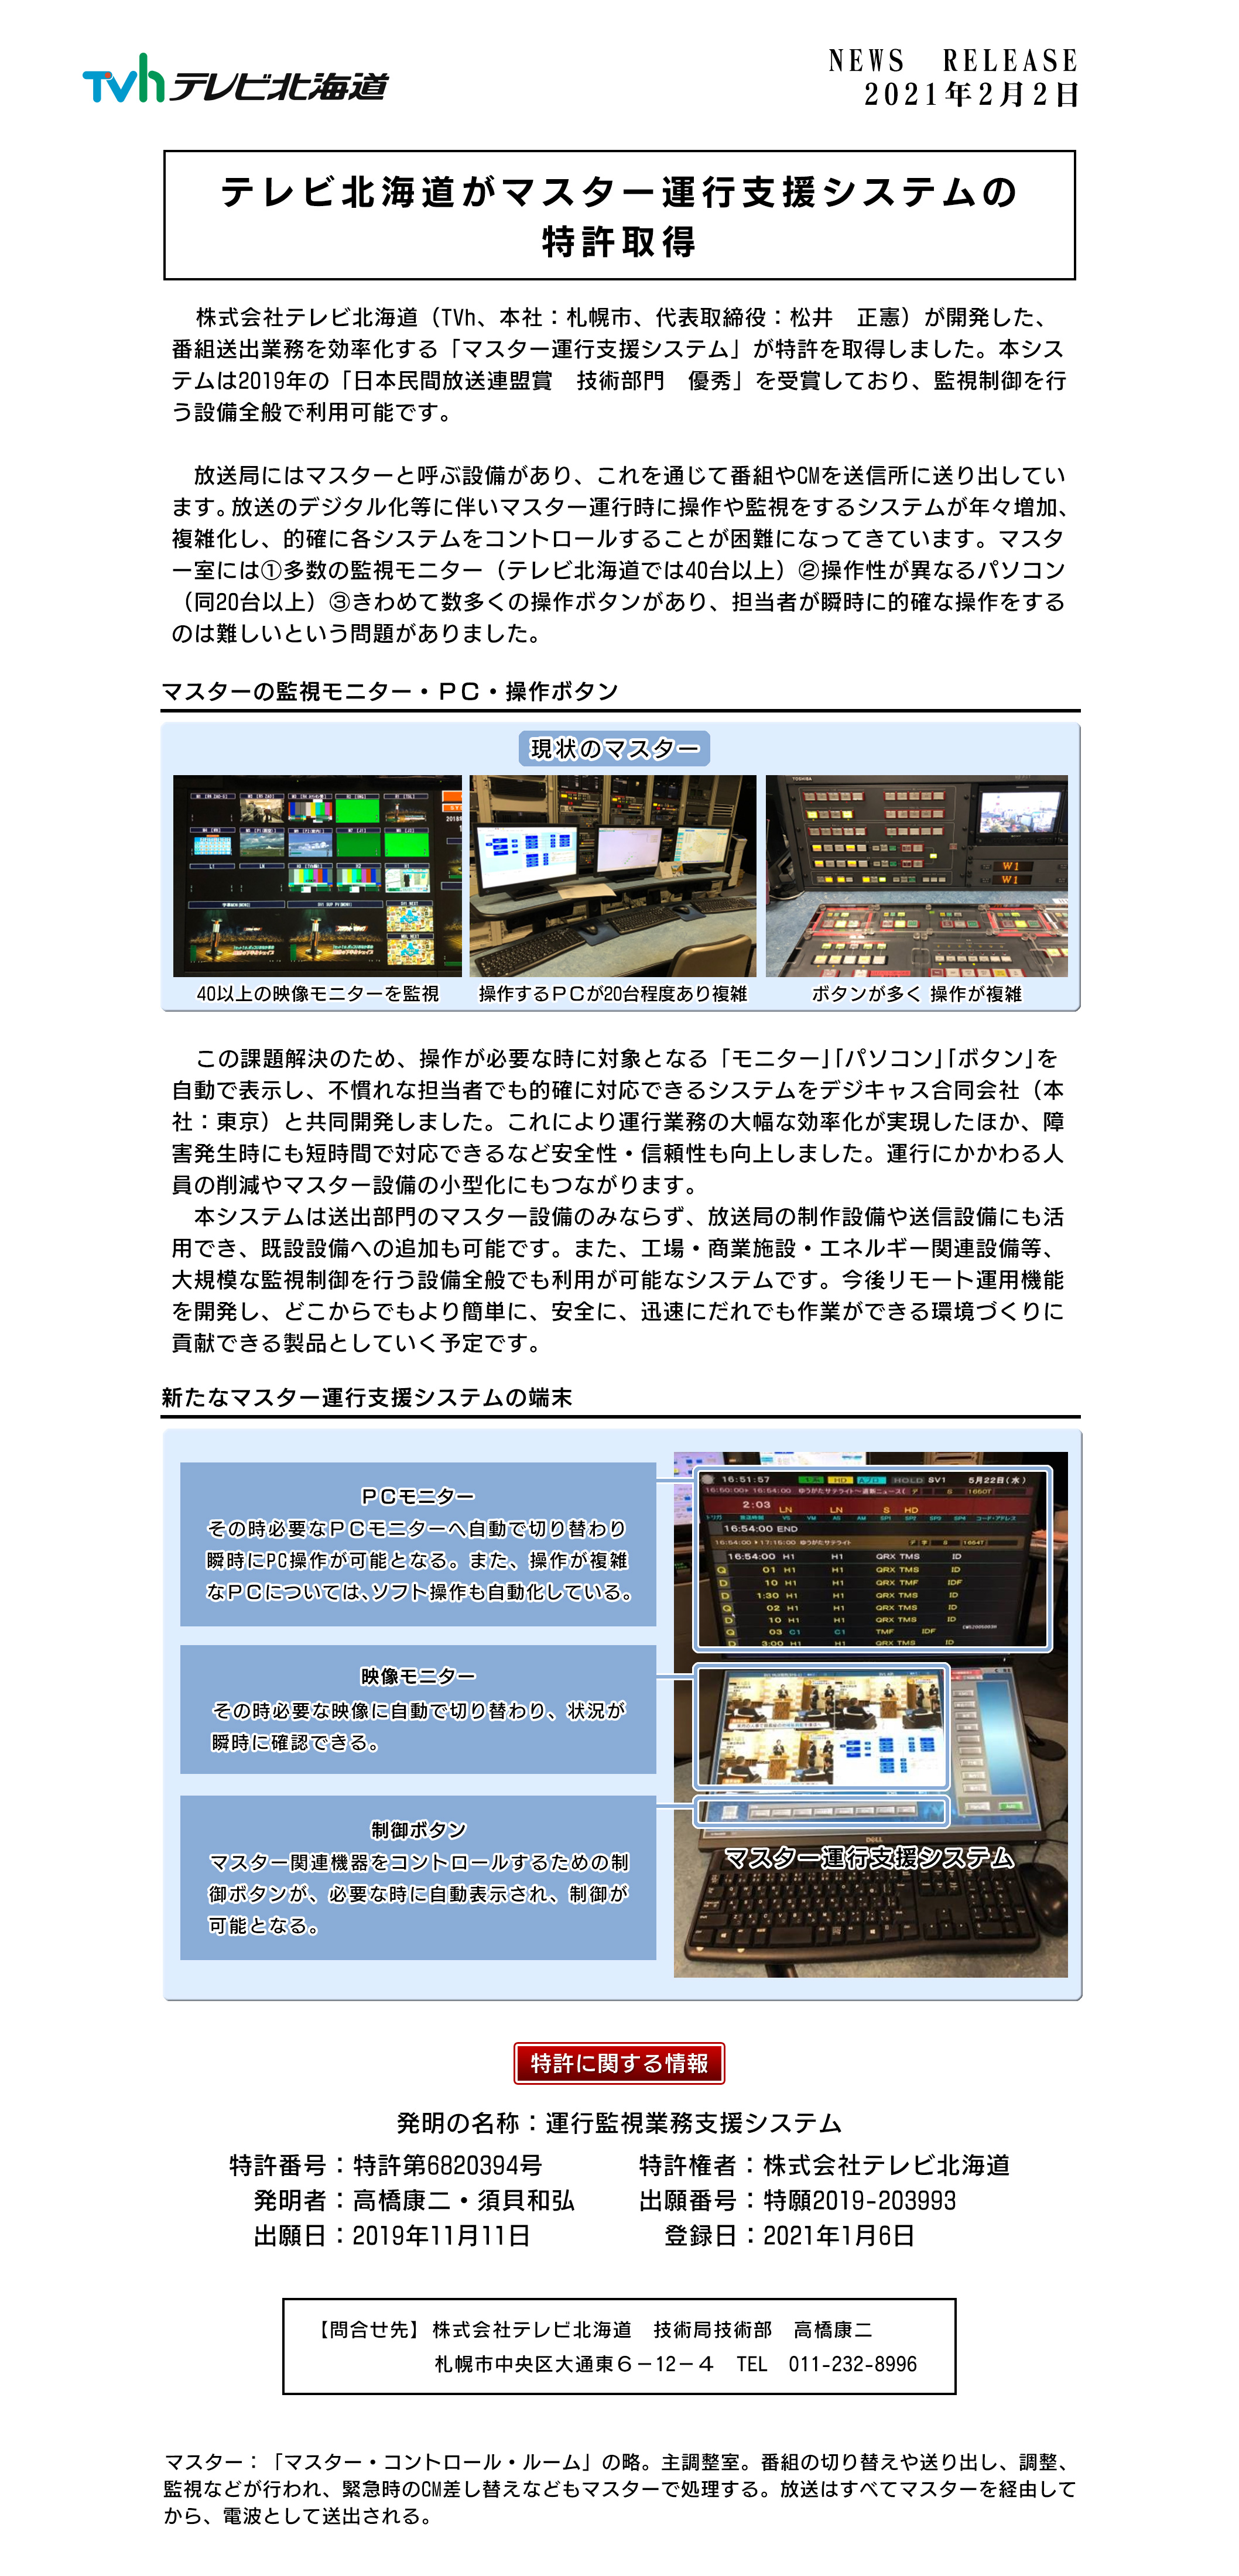 テレビ北海道がマスター運行支援システムの特許取得